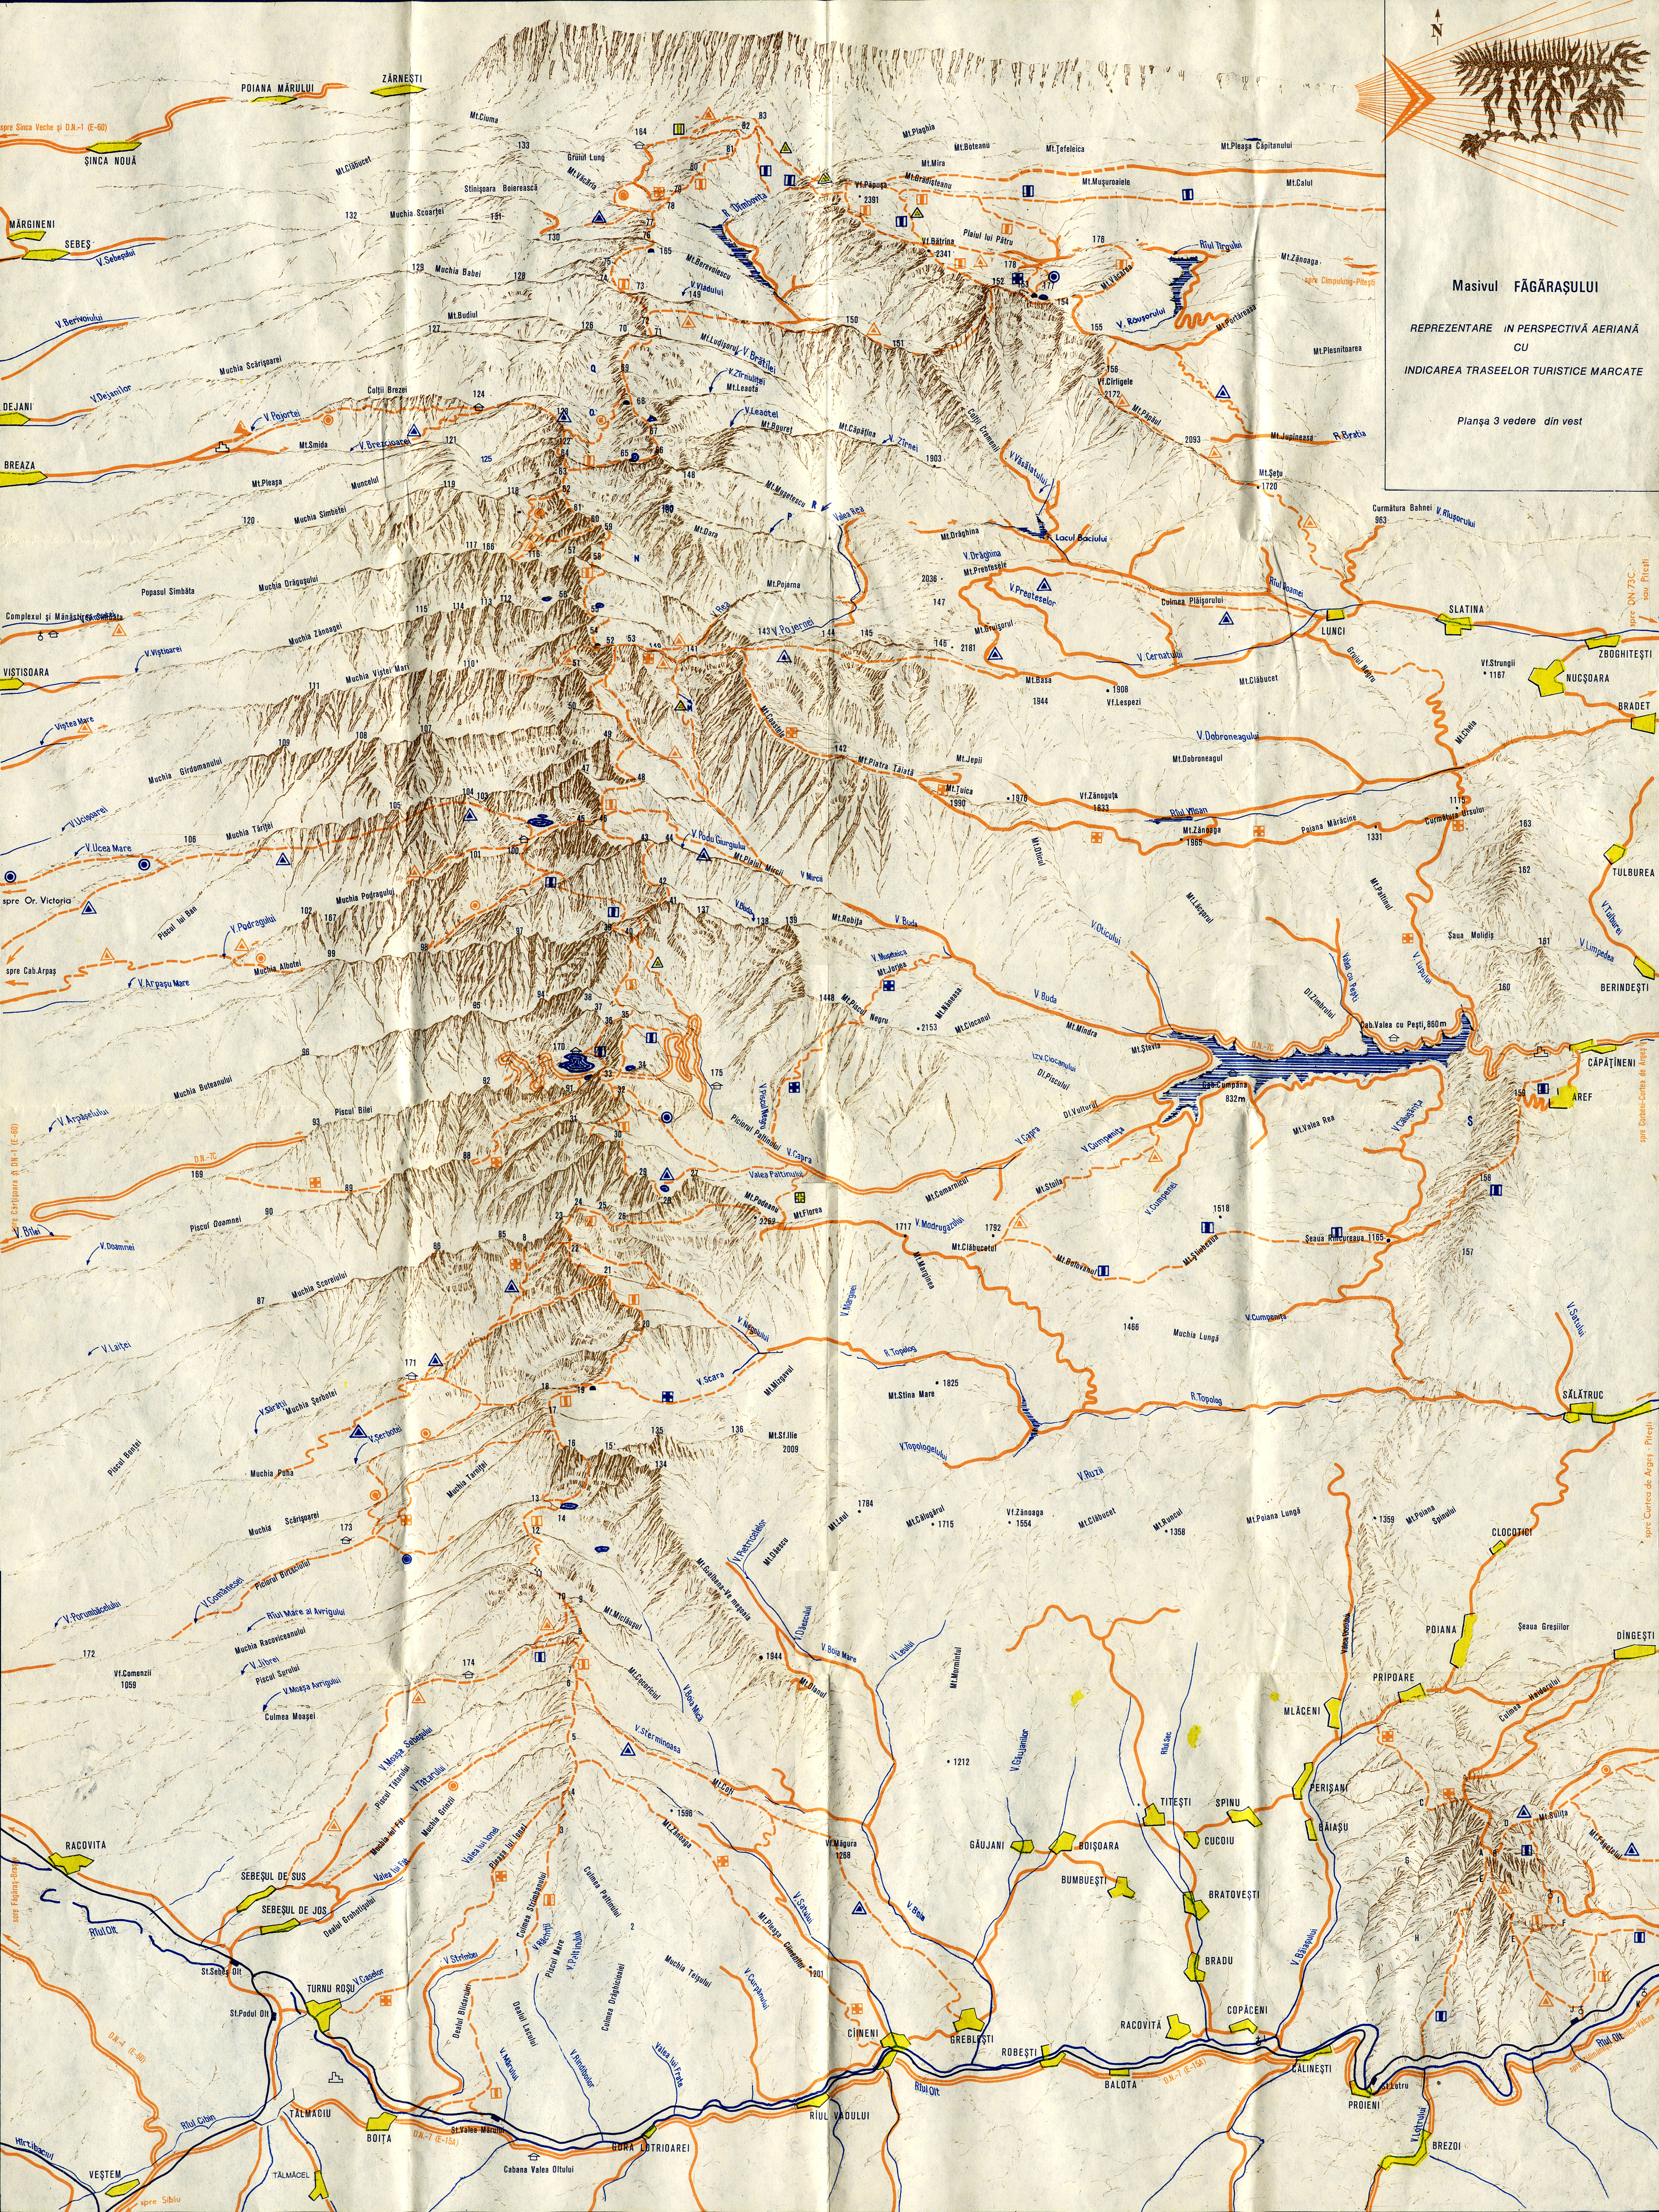 Maps Fagaras Mountains